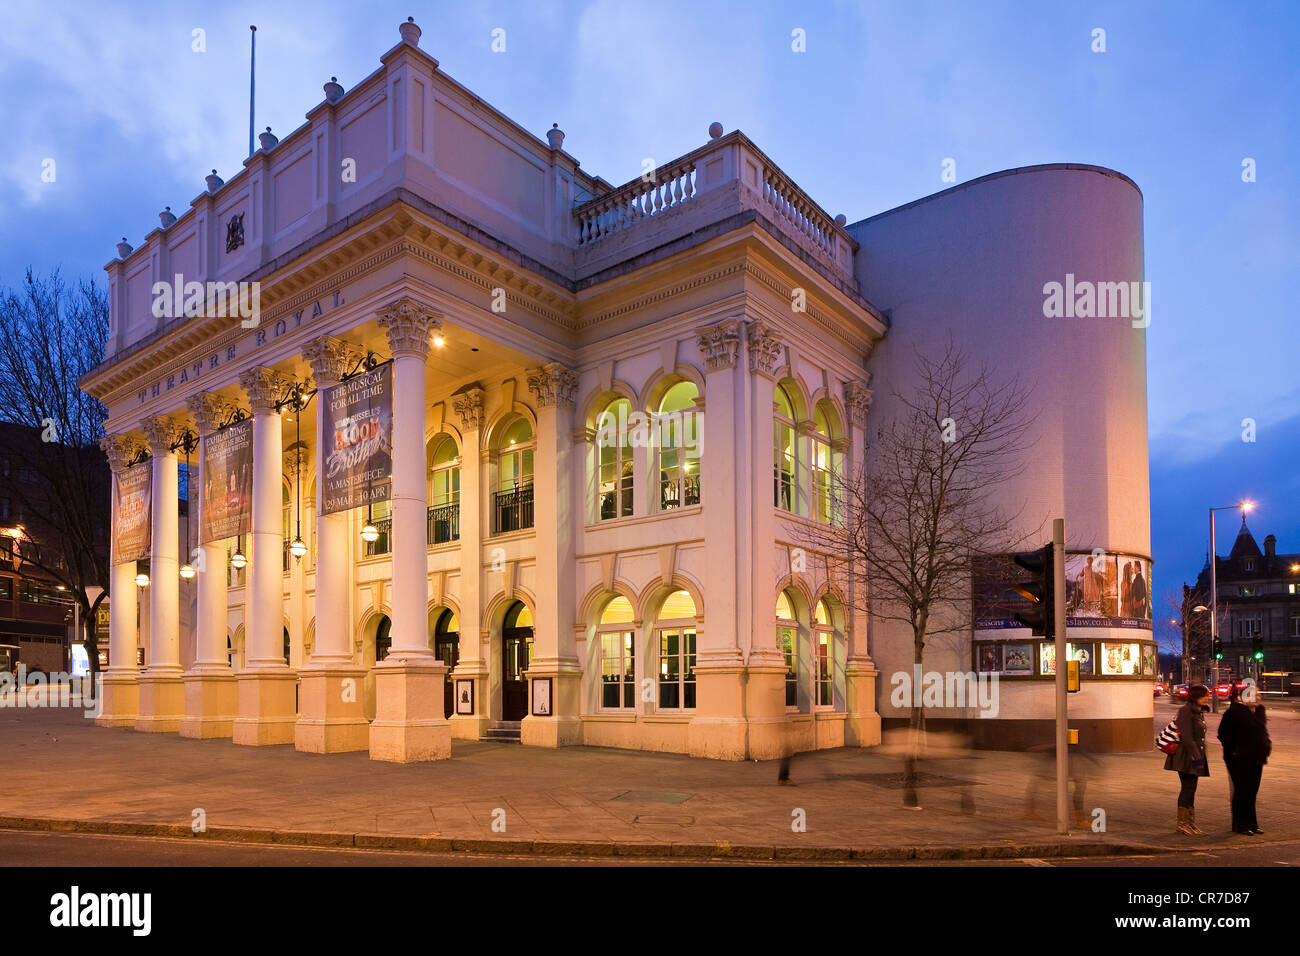 Vereinigtes Königreich, East Midlands, Nottinghamshire, Nottingham, Royal Theatre datiert 1865, Fassade im klassischen Stil mit korinthischen Stockfoto